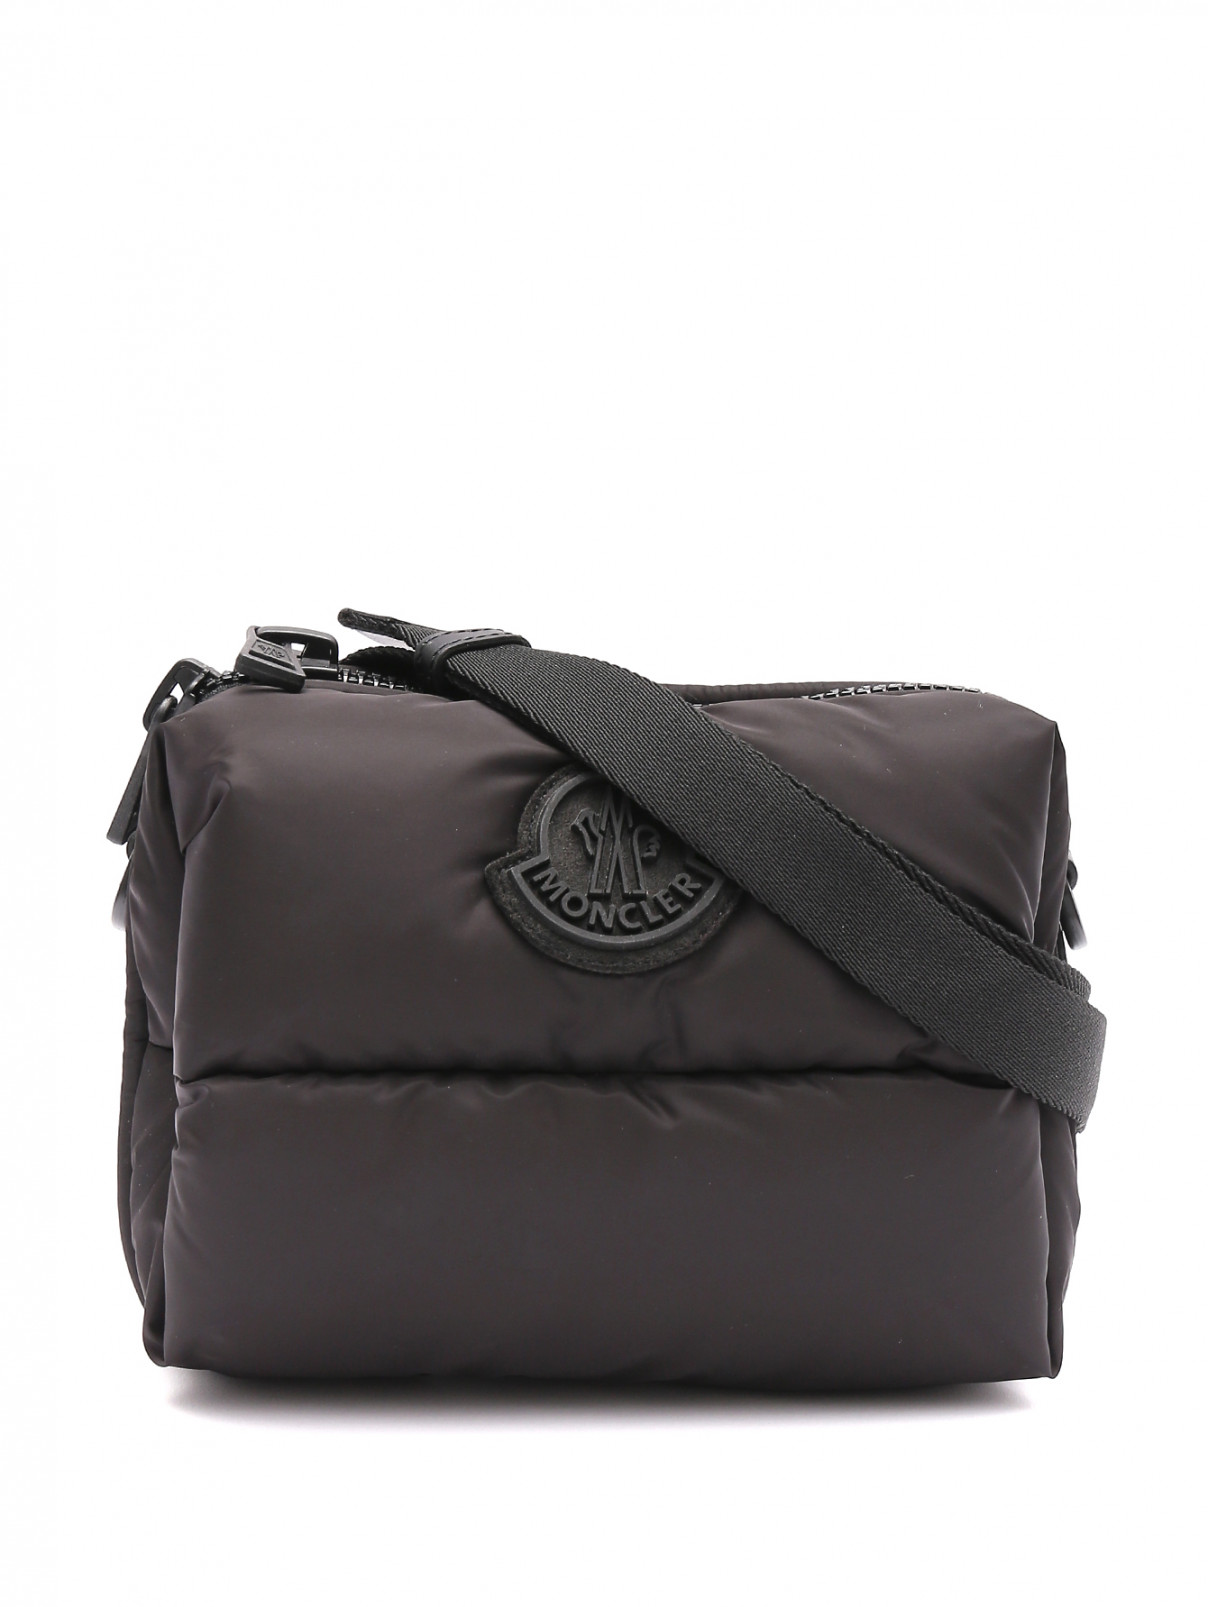 Поясная сумка из текстиля Moncler  –  Общий вид  – Цвет:  Черный